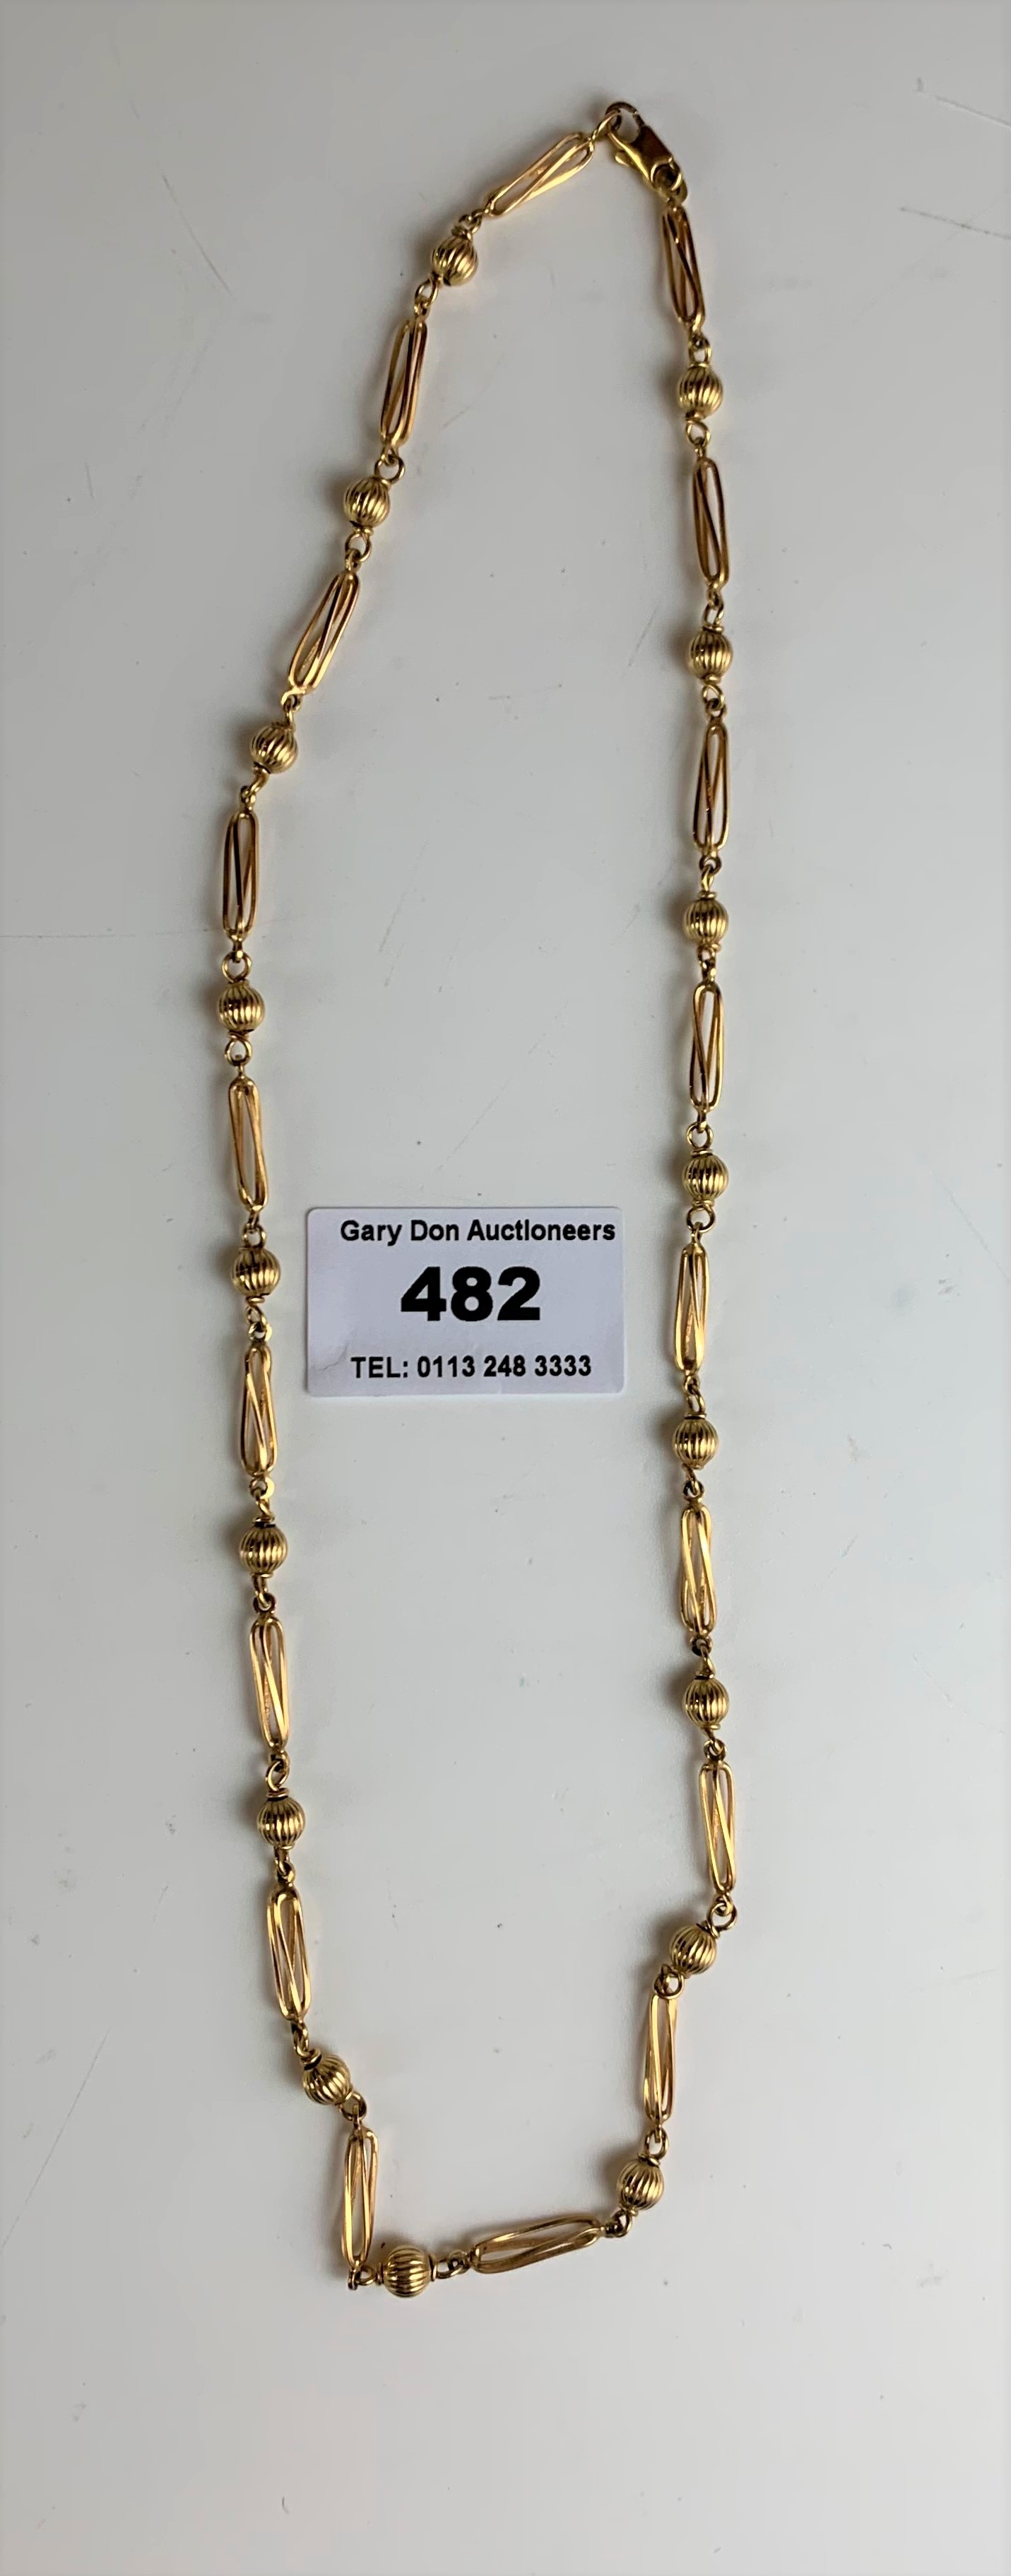 9k gold necklace, length 20”, w: 13.5 gms